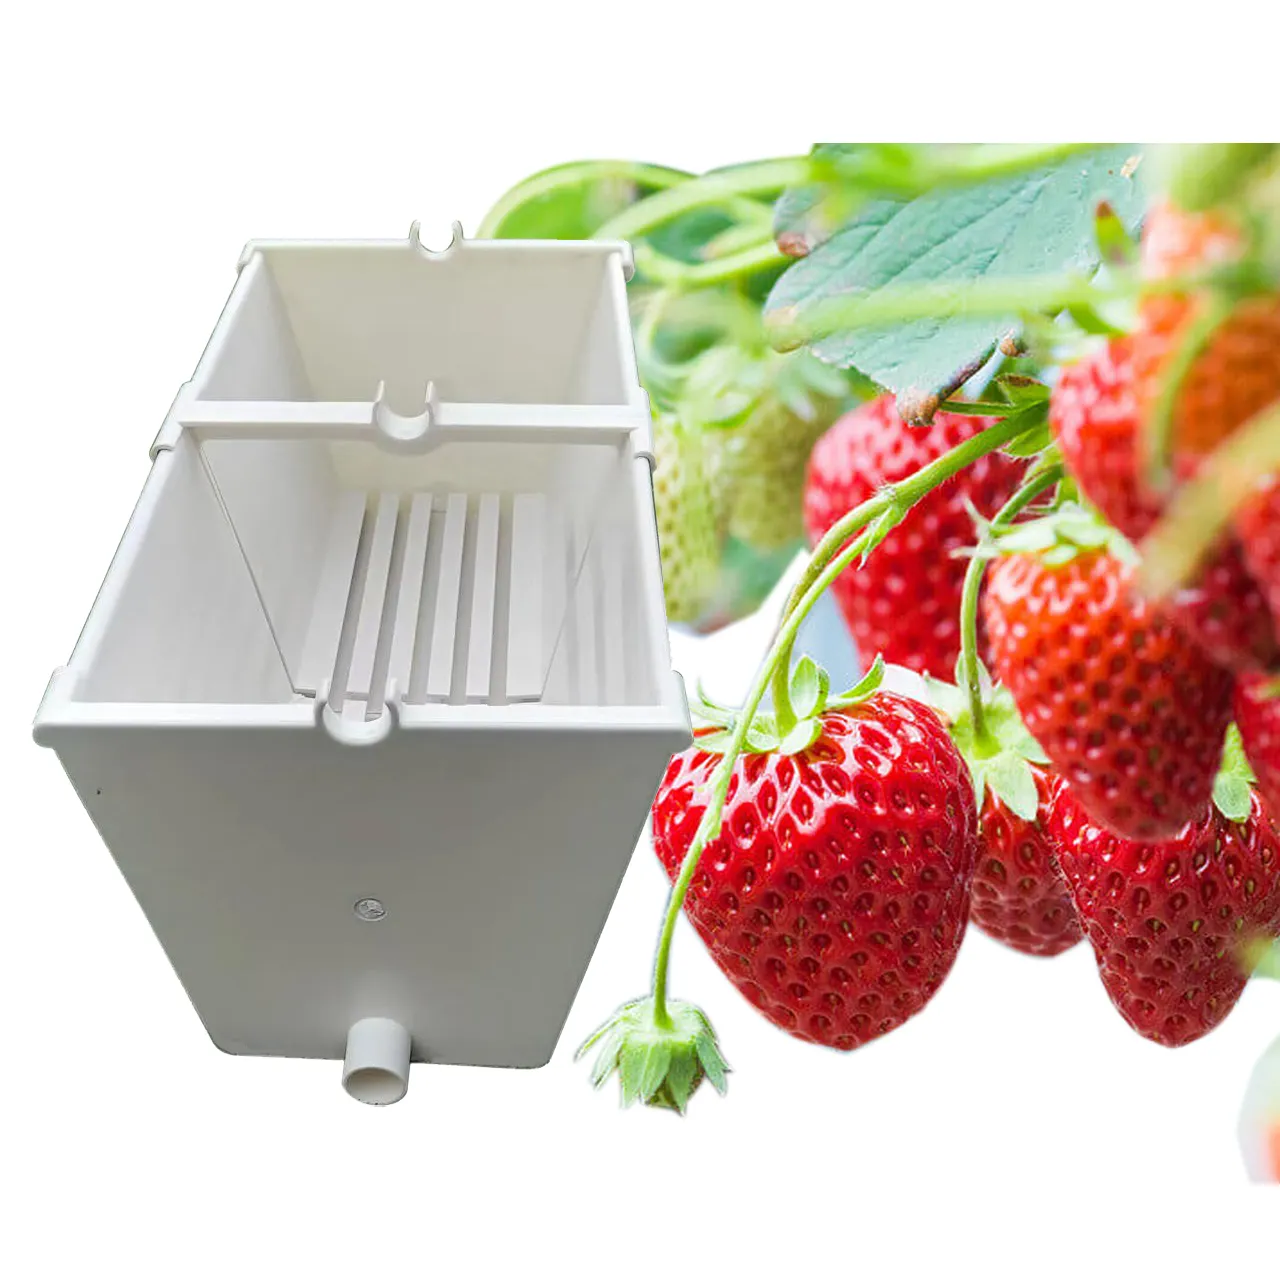 Gouttière de fraises en pvc pour la culture de légumes, fruits, fraises, concombres, tomates dans une serre hydroponique commerciale, nouvel arrivage